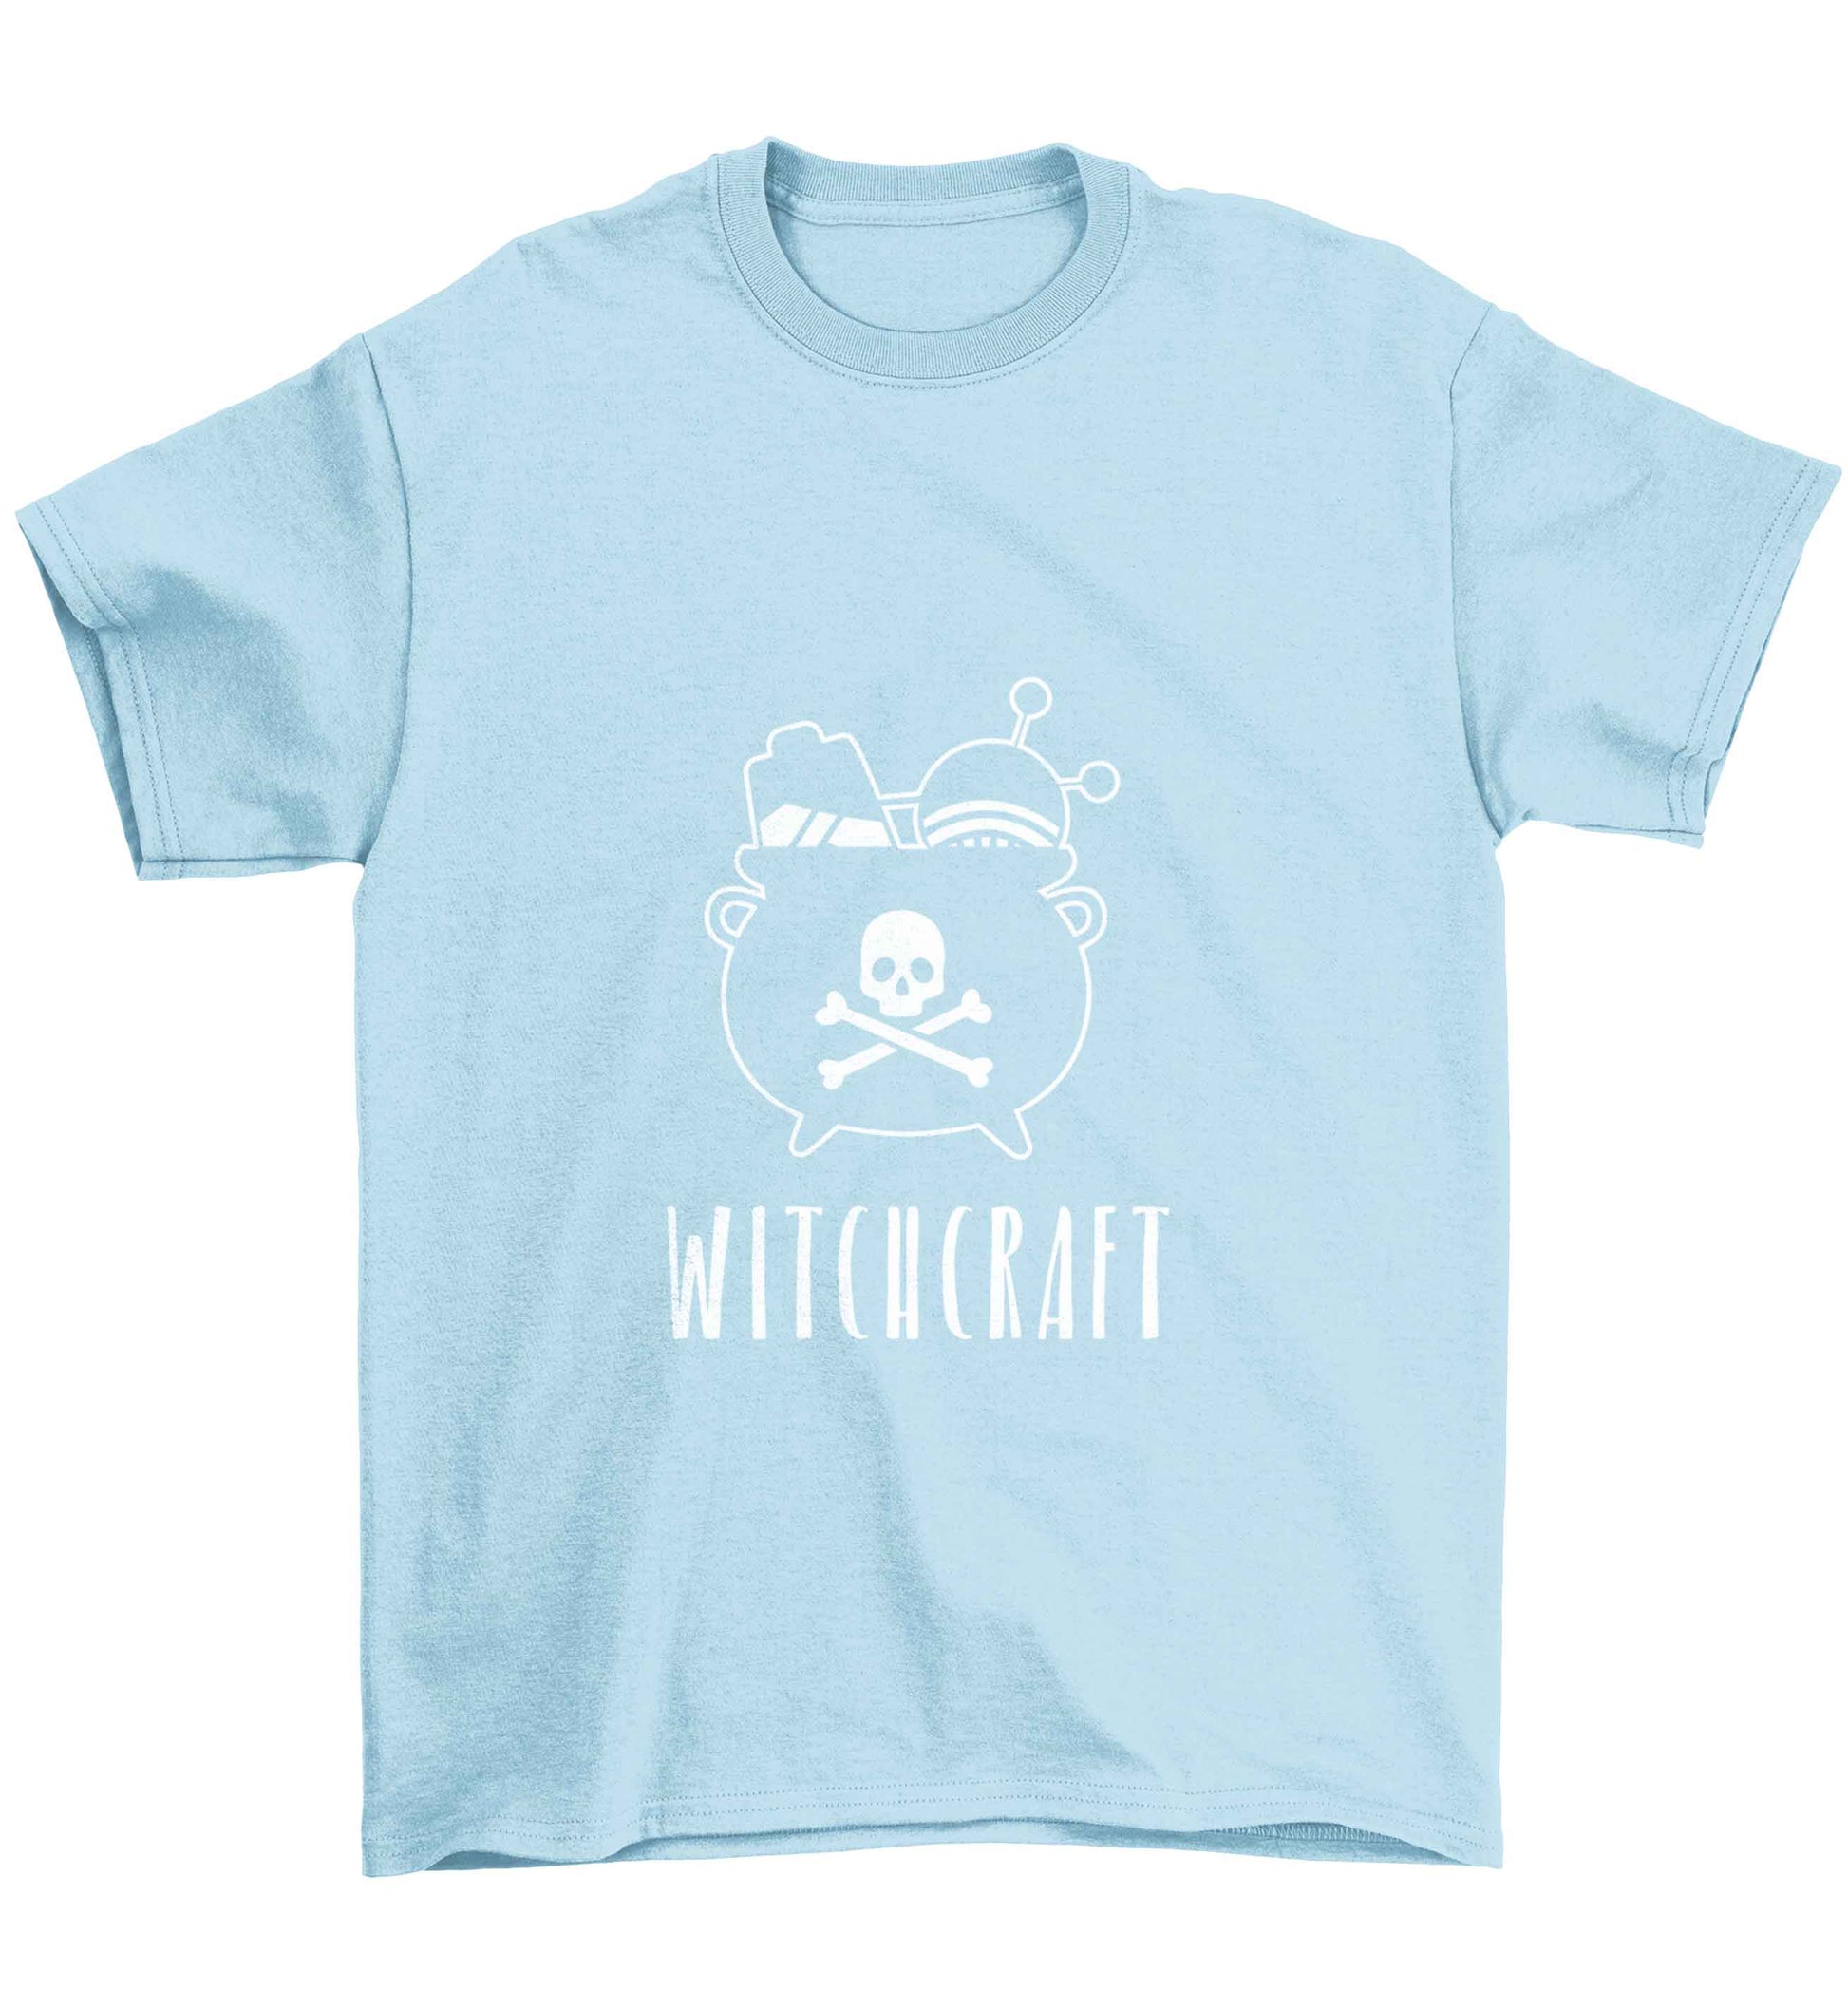 Witchcraft Children's light blue Tshirt 12-13 Years